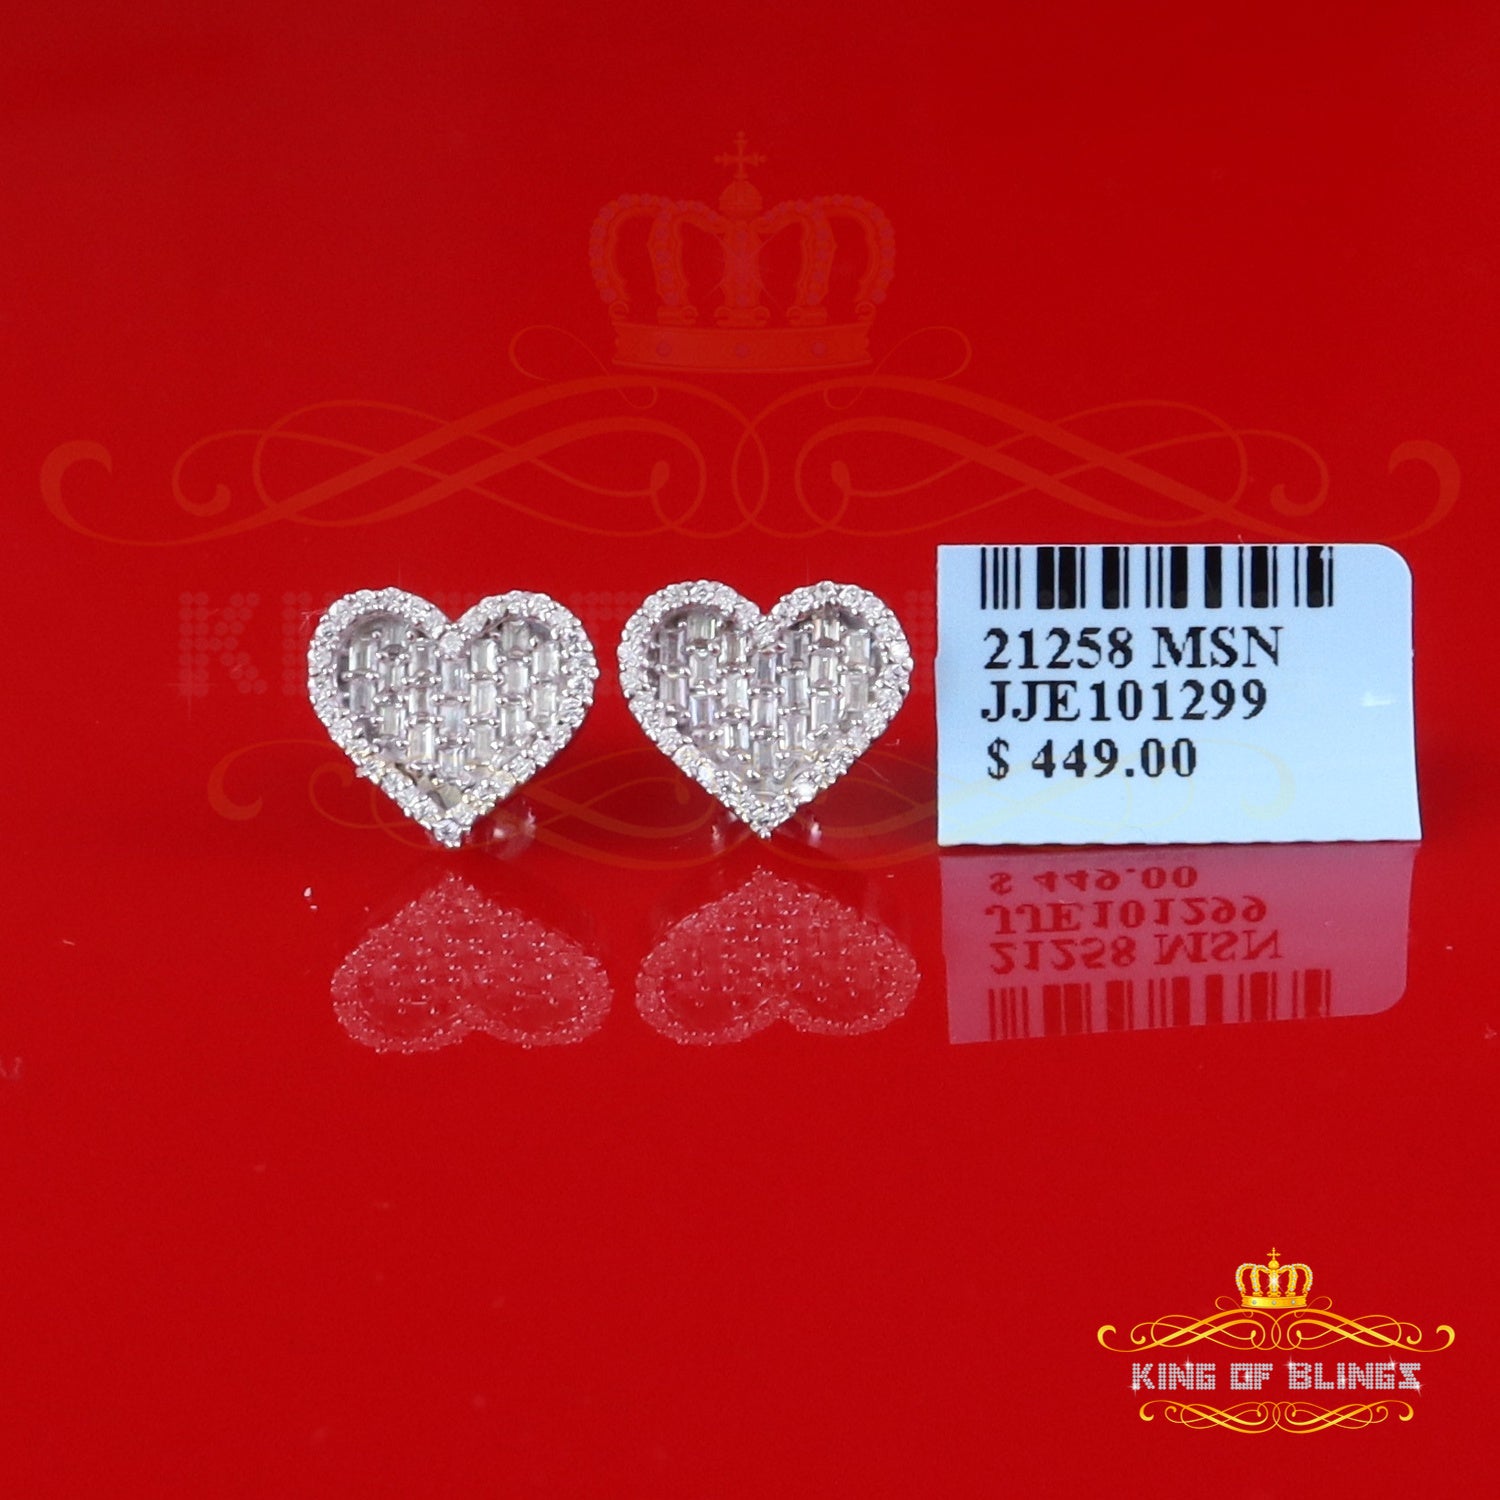 King of Bling's White Silver 1.00ct VVS 'D' Moissanite Baguette Heart Earring Men's/Womens King of Blings